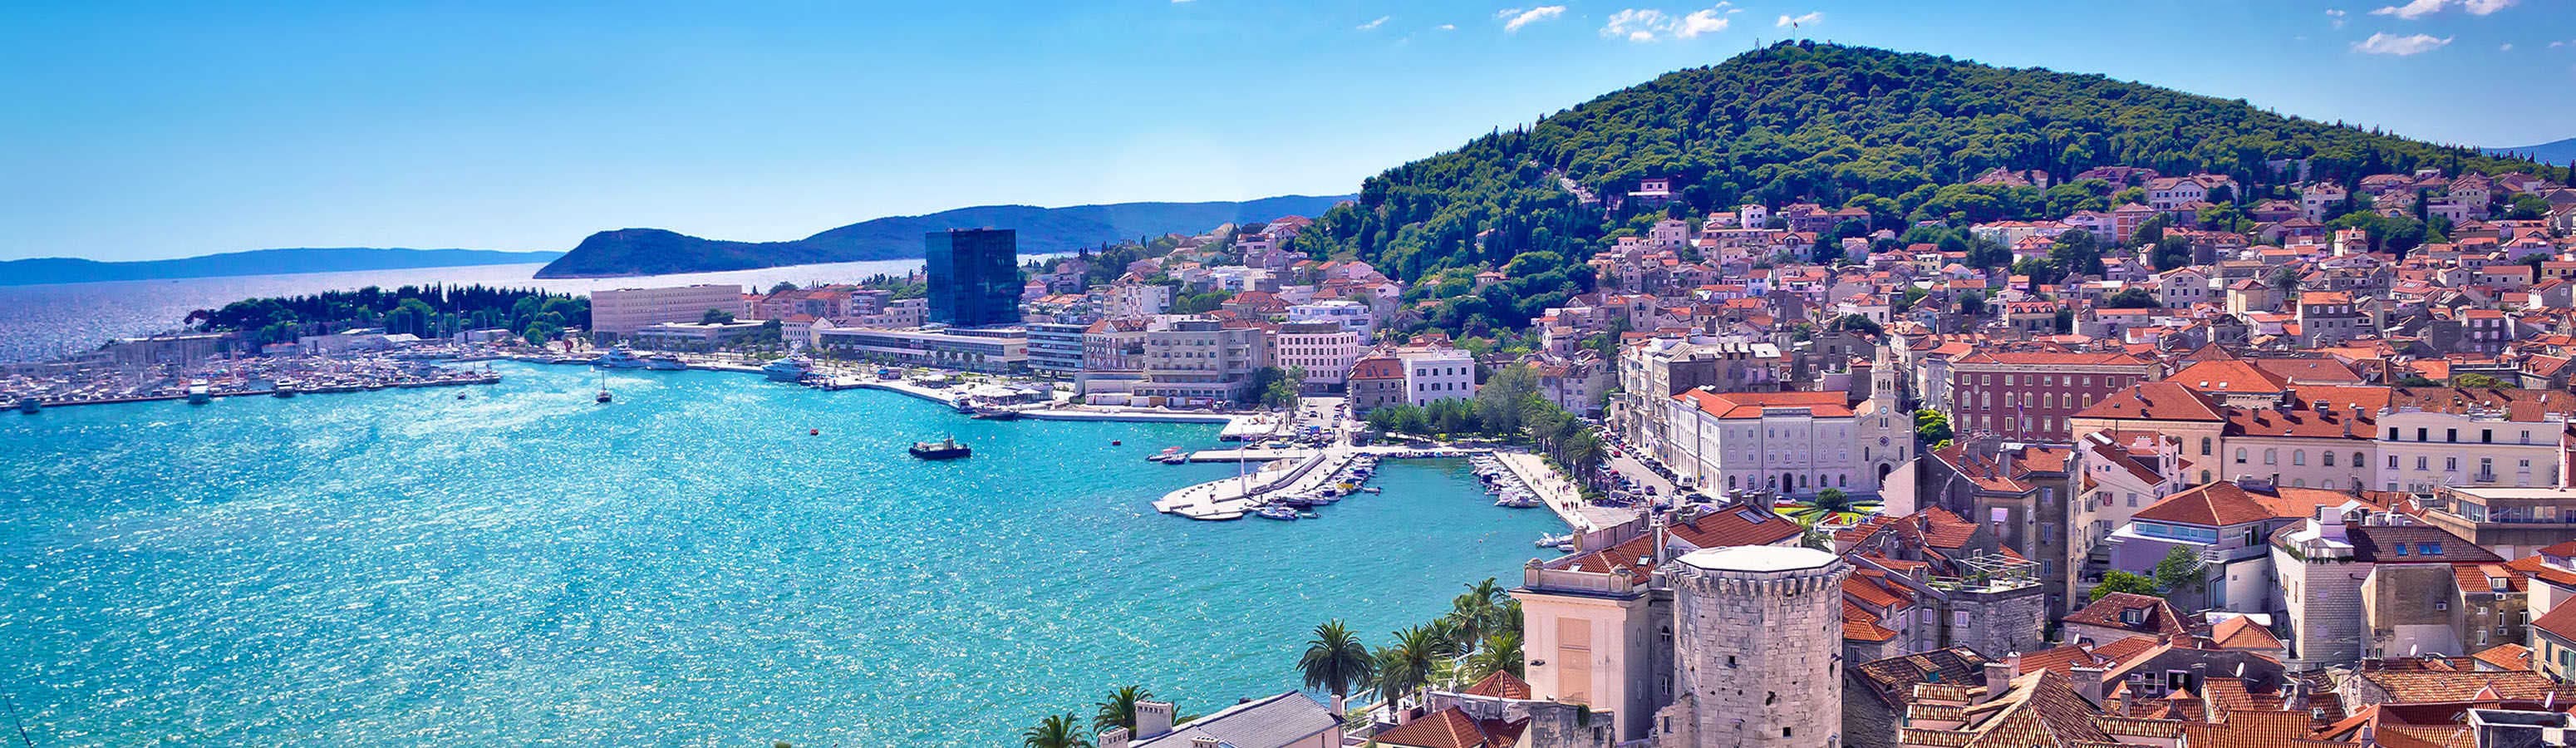 Élvezze a még meleg nyári napokat Splitben!